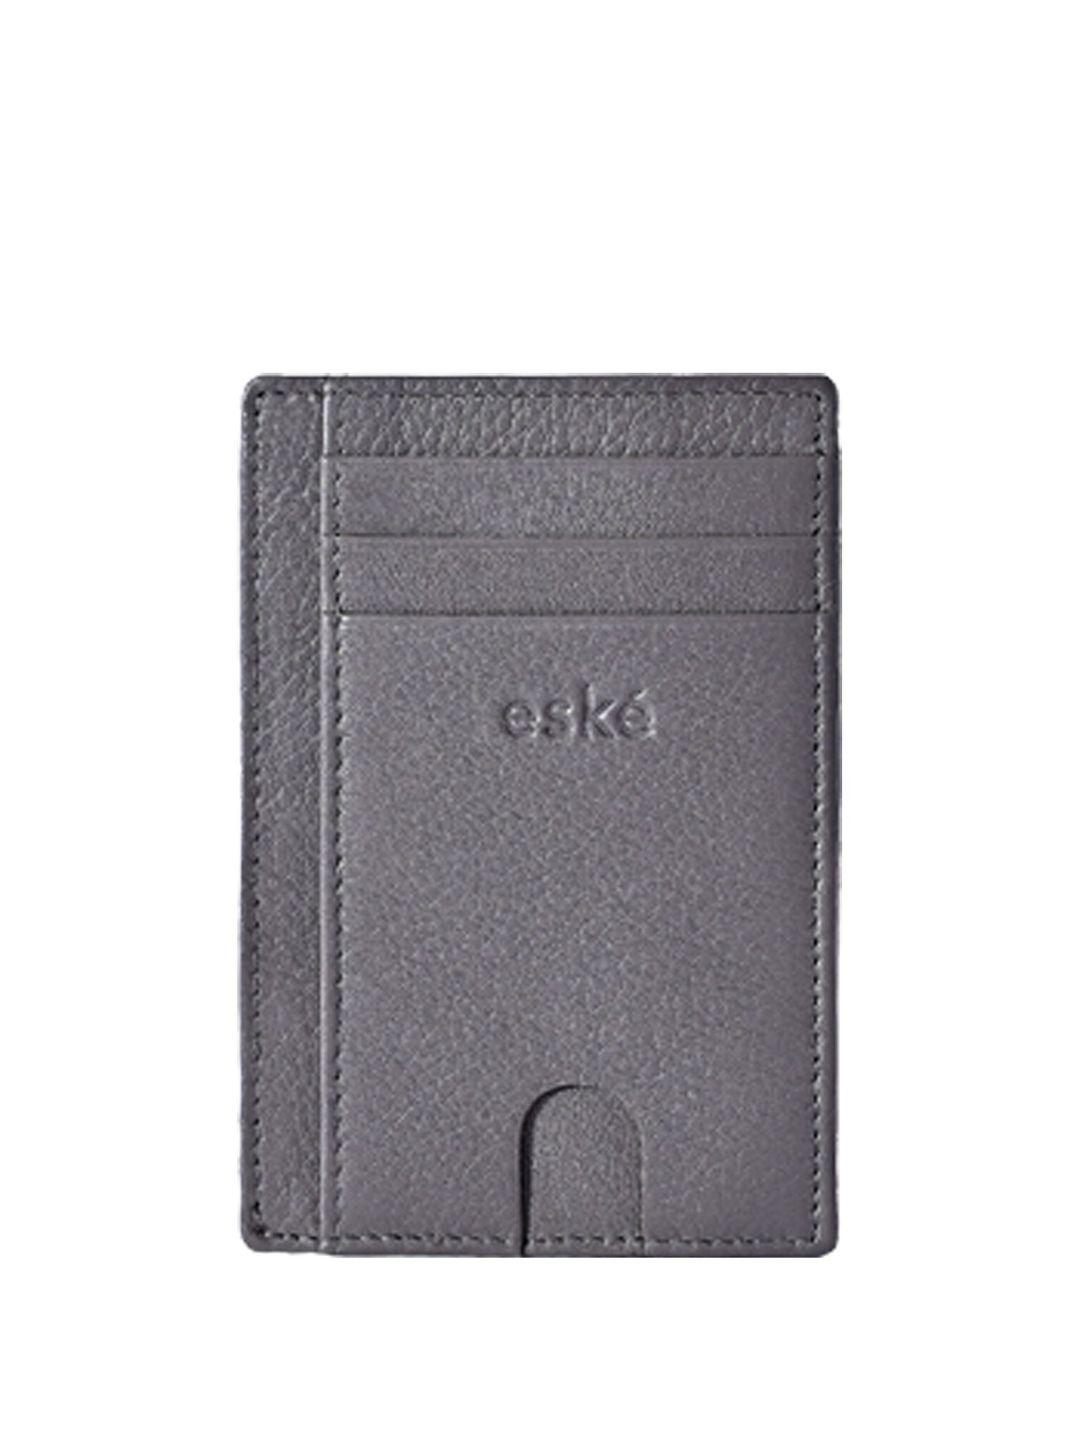 eske men grey leather card holder